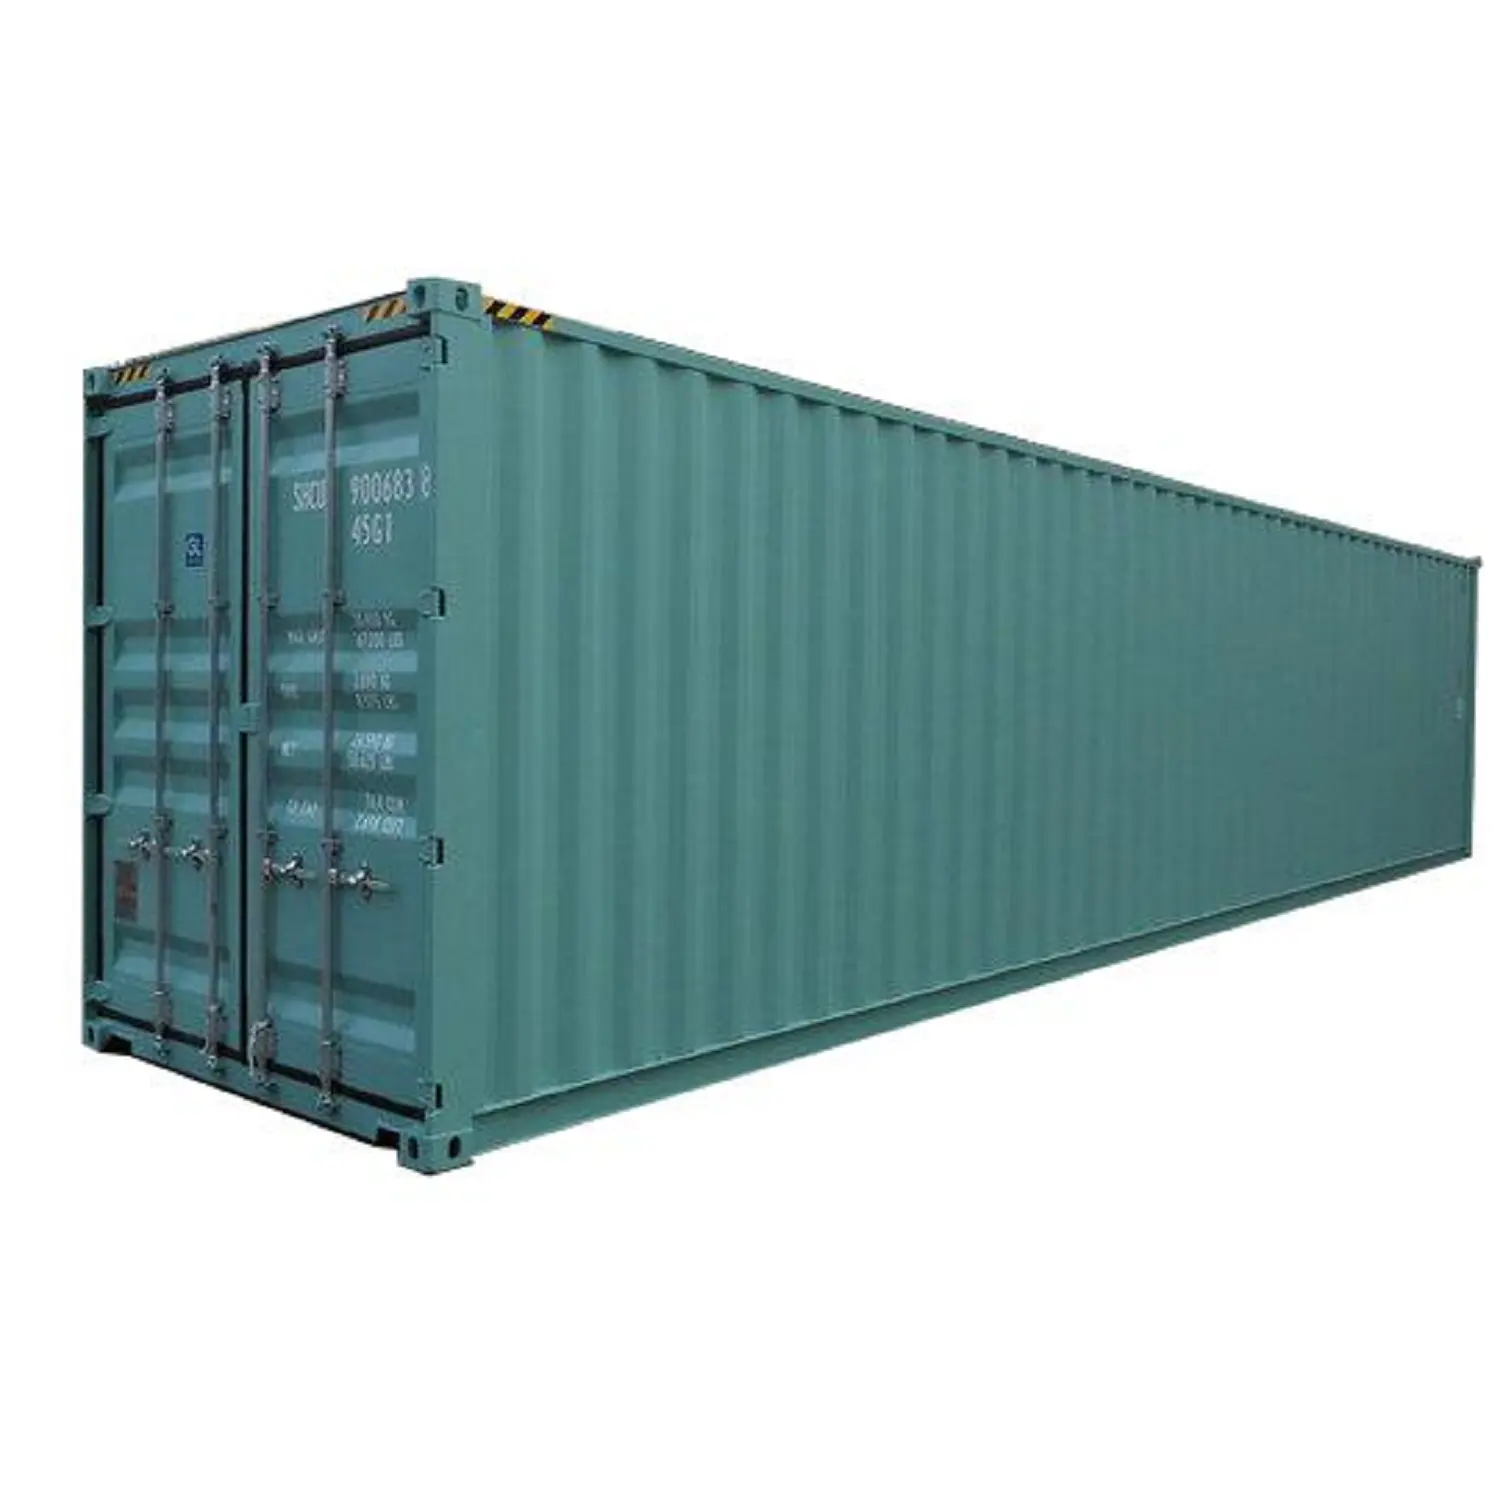 Nakliye konteynerler 40 feet yüksek küp/kullanılmış ve yeni 40ft ve 20 ft